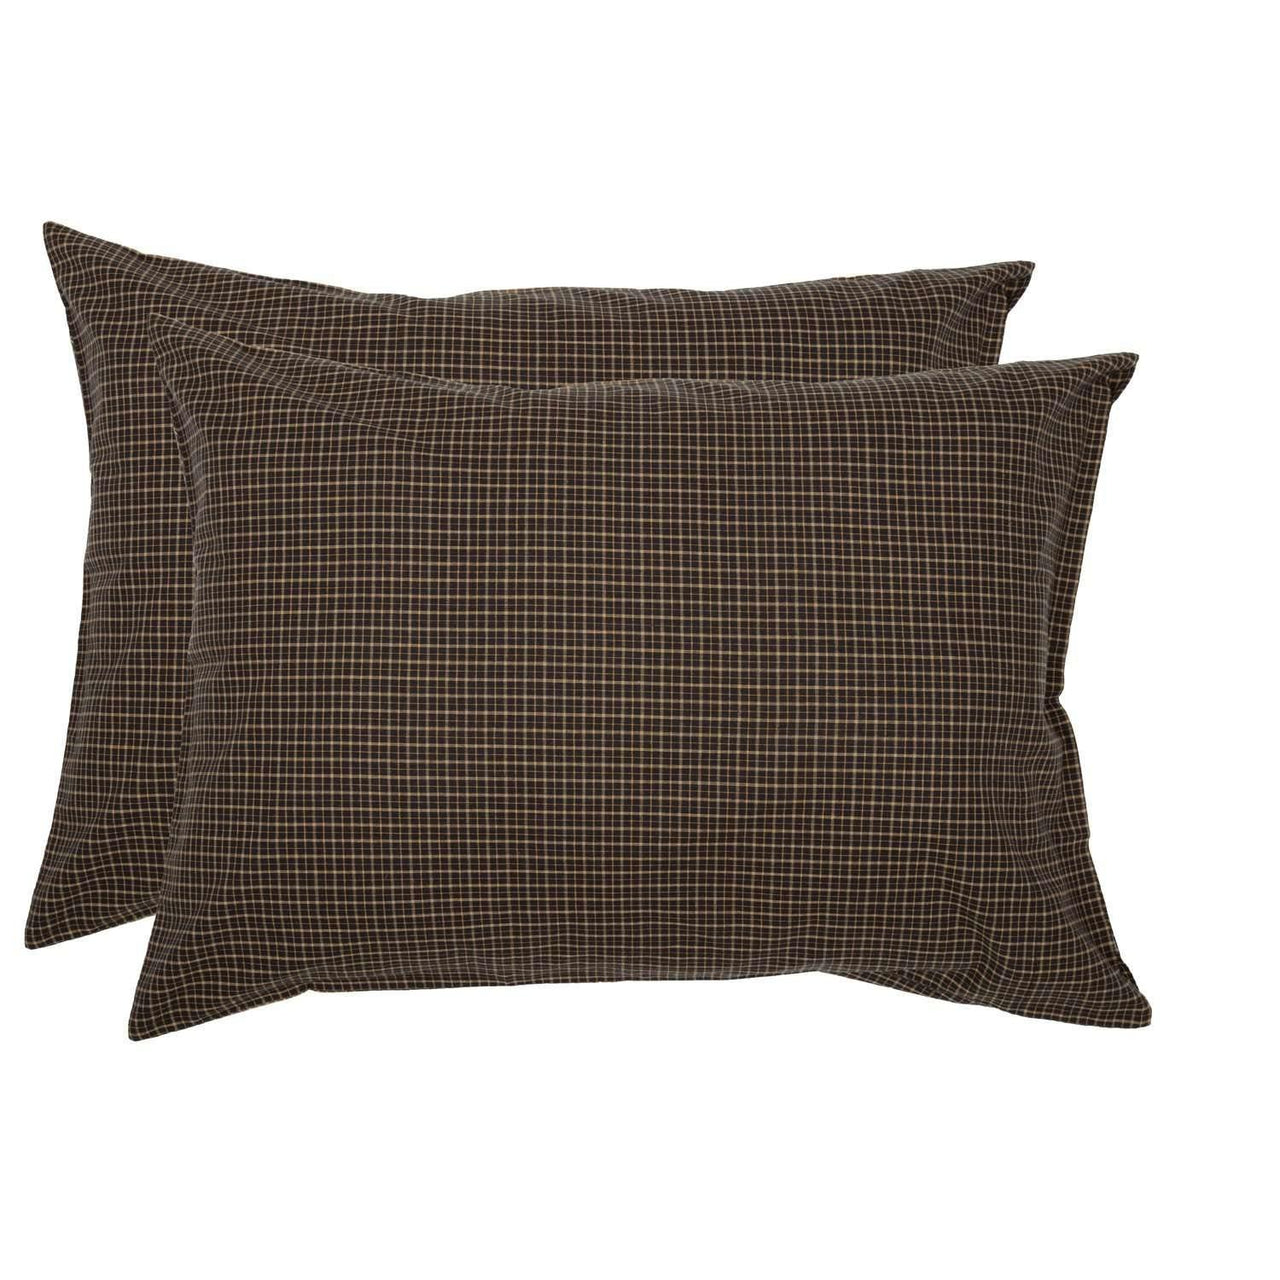 Kettle Grove Standard Pillow Case Set of 2 21x30 VHC Brands - The Fox Decor